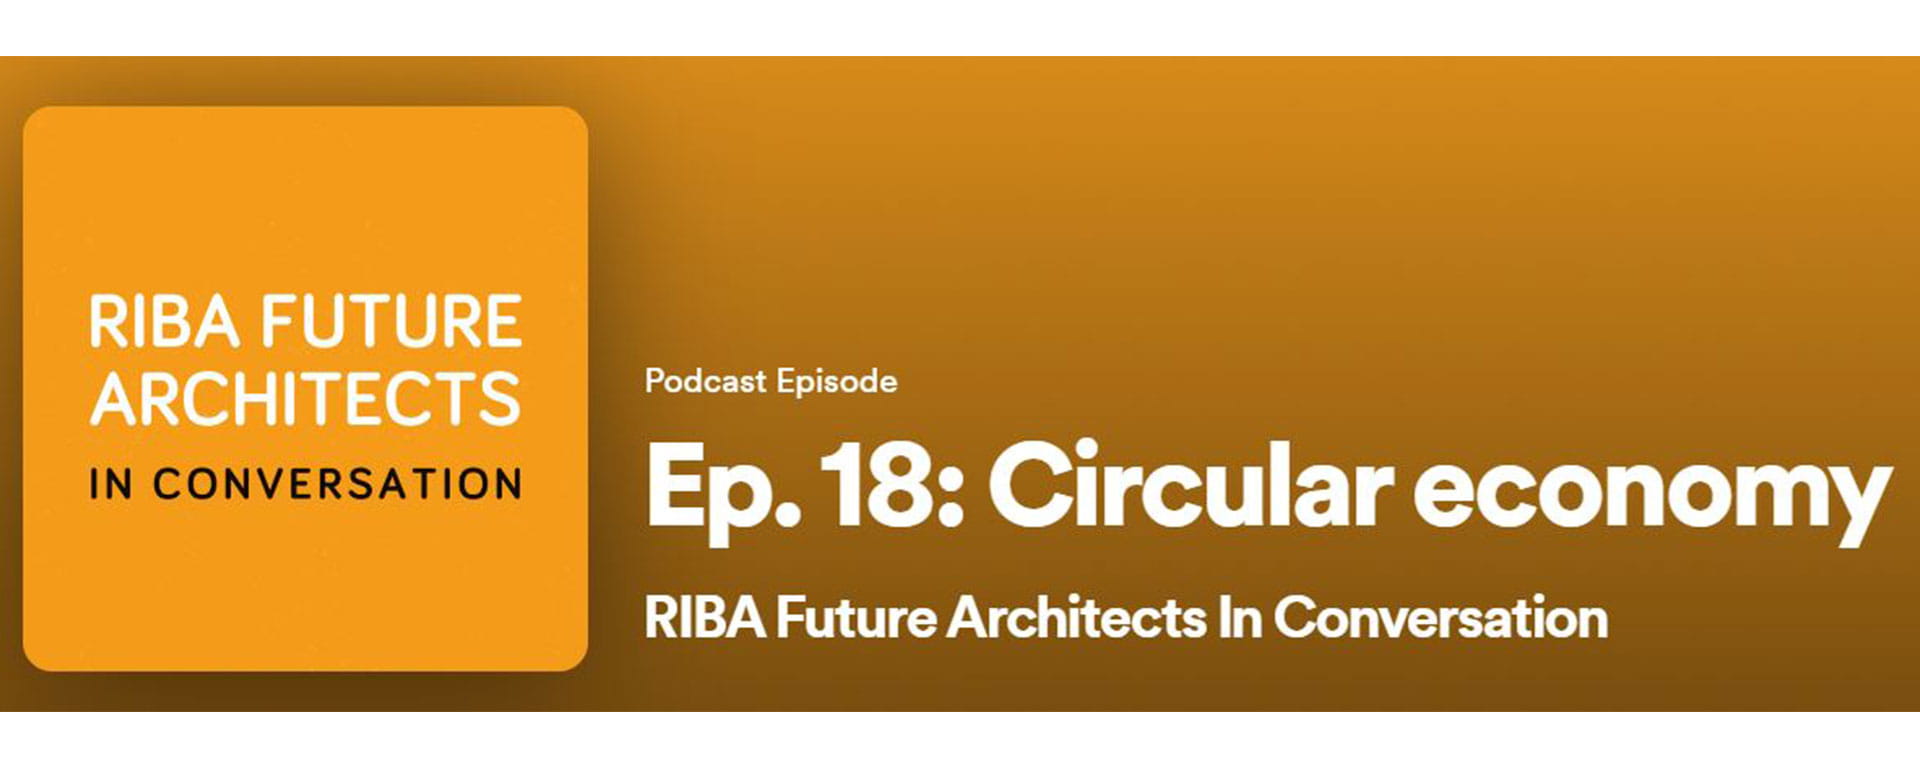 RIBA Future Architects Podcast